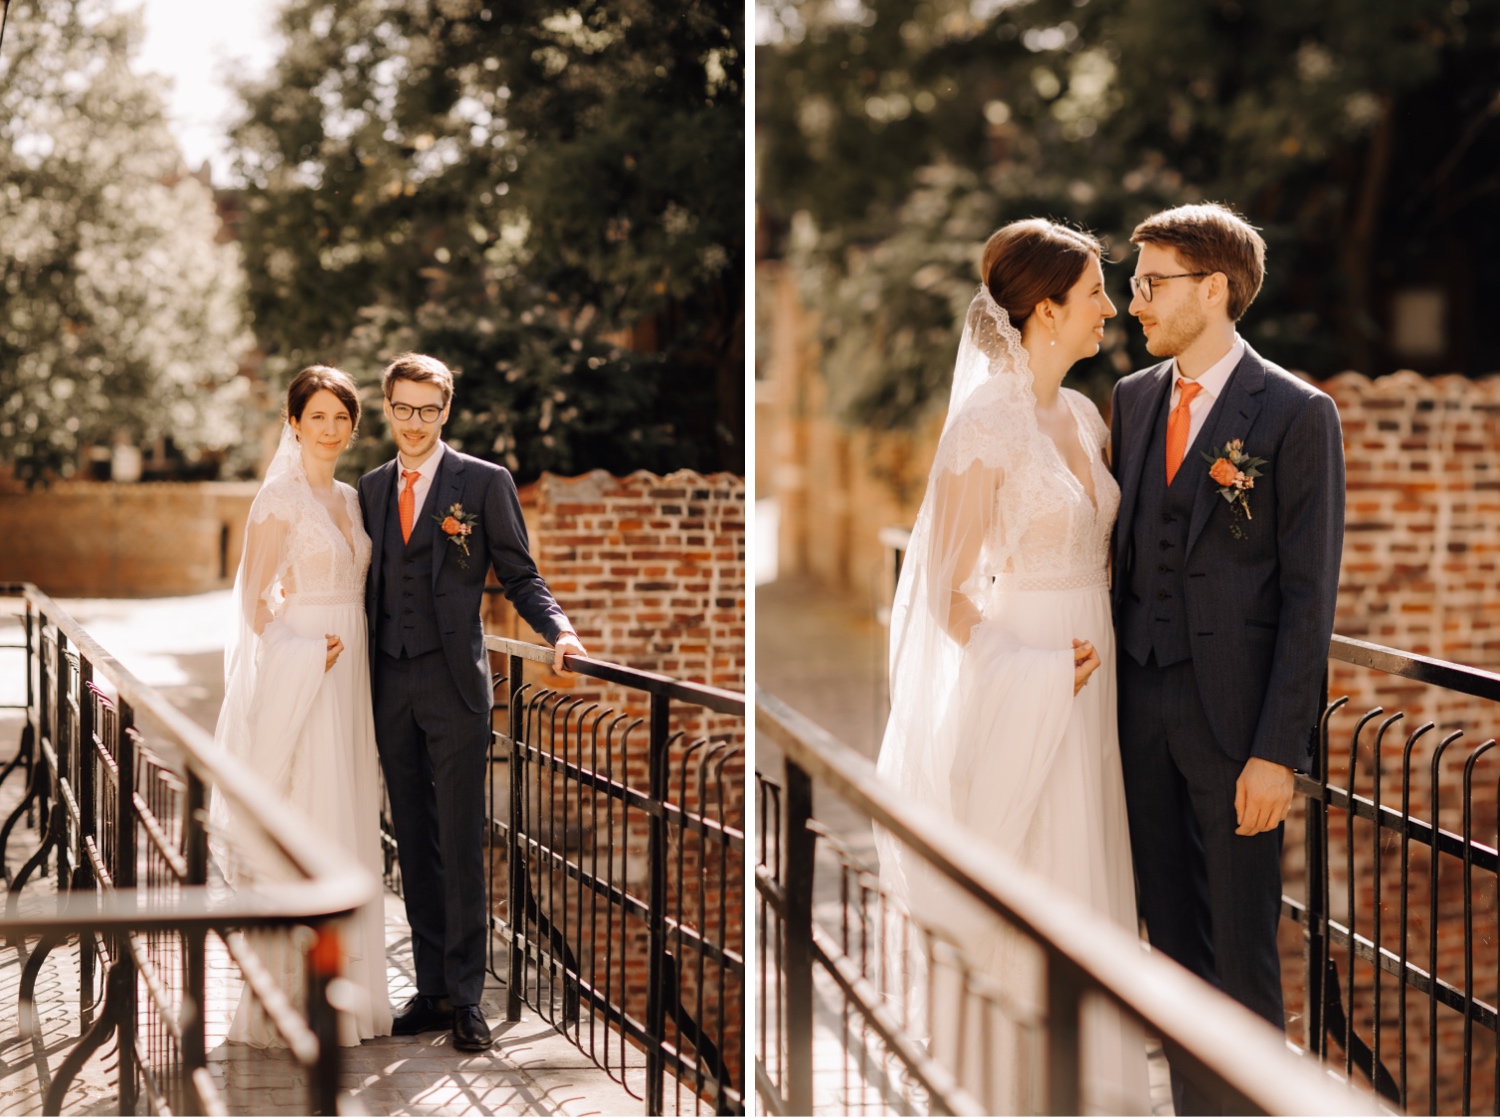 Huwelijksfotograaf Limburg - bruidspaar poseert tijdens fotoshoot in begijnhof te Leuven